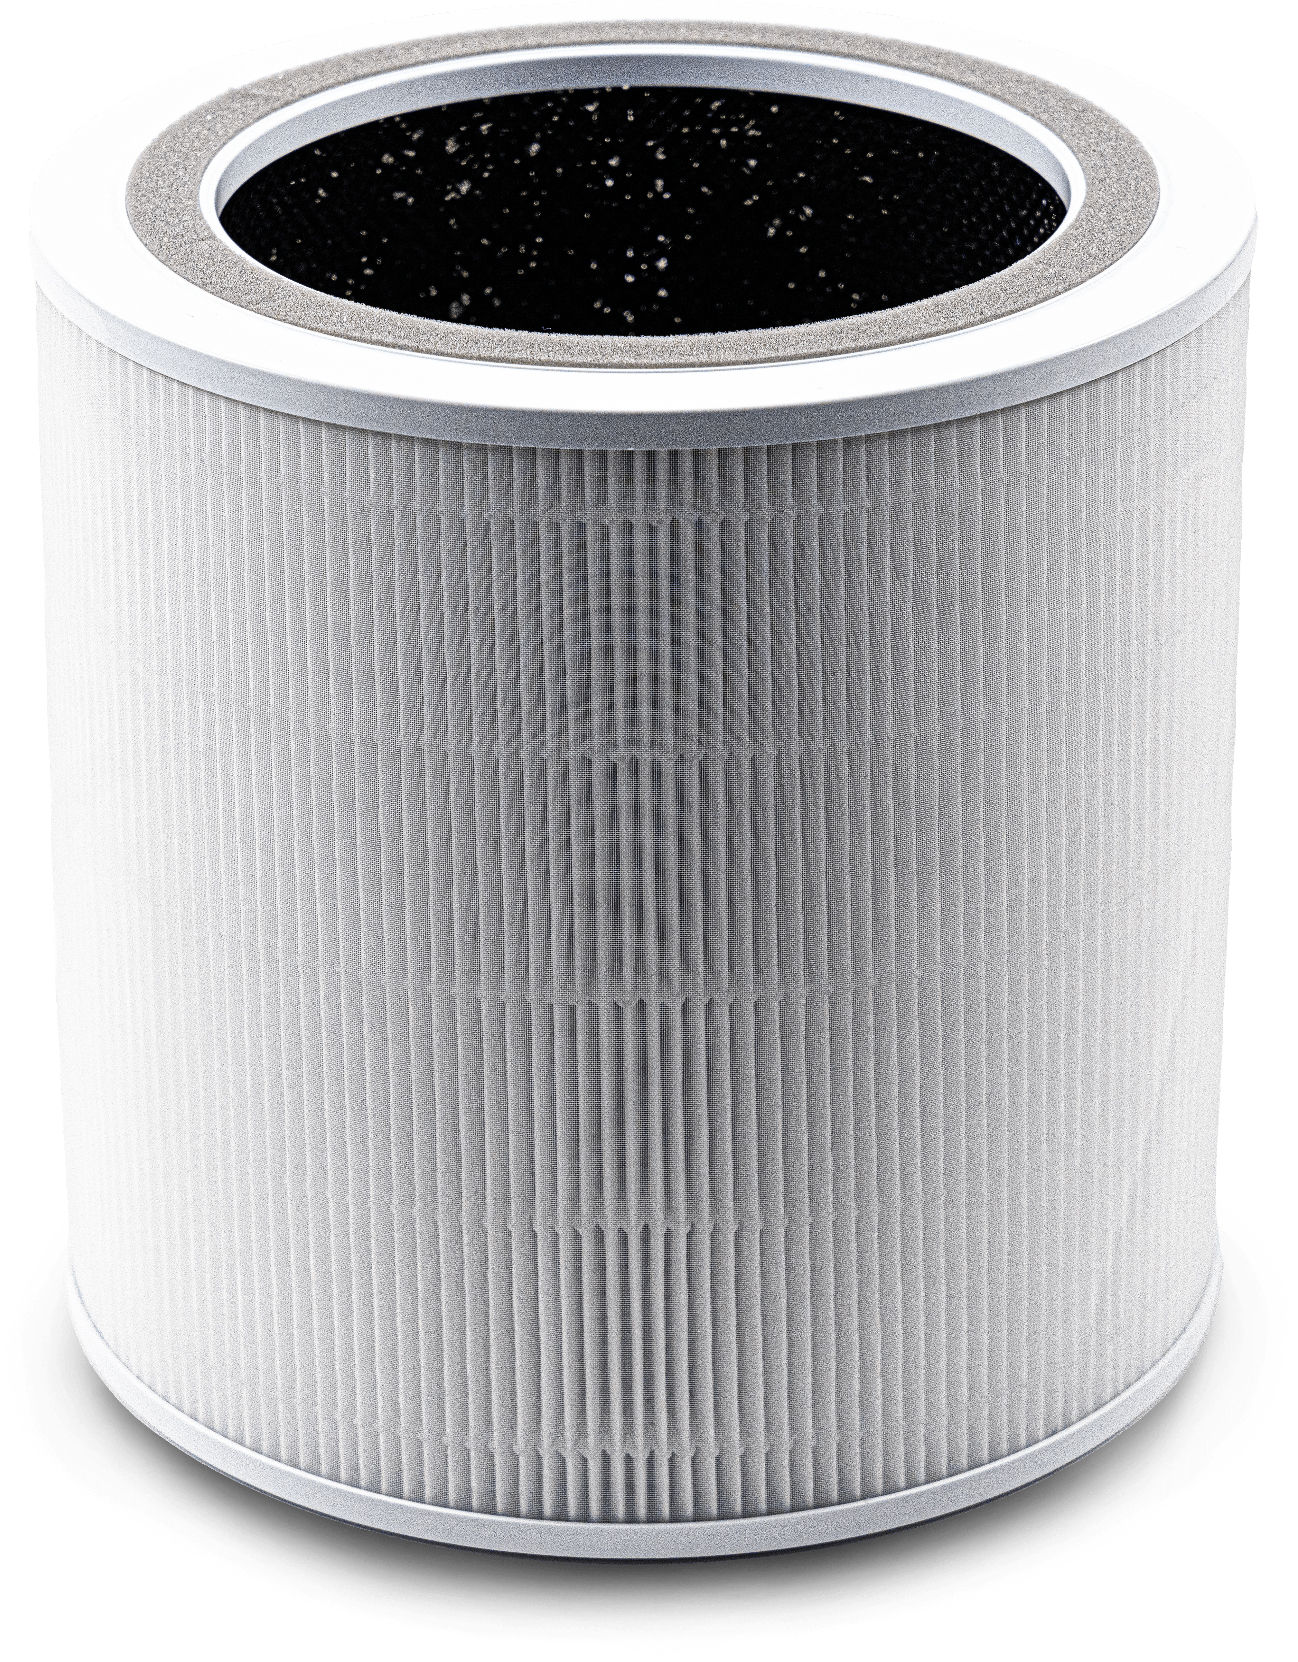 Фильтр для увлажнителя воздуха Levoit Air Cleaner Filter Core 400S True HEPA 3-Stage в интернет-магазине, главное фото